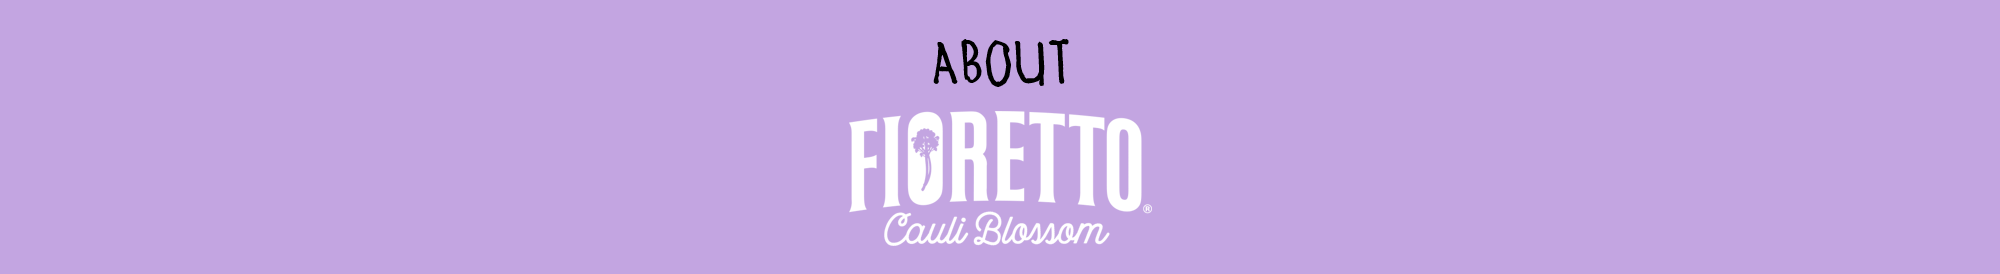 About Fioretto